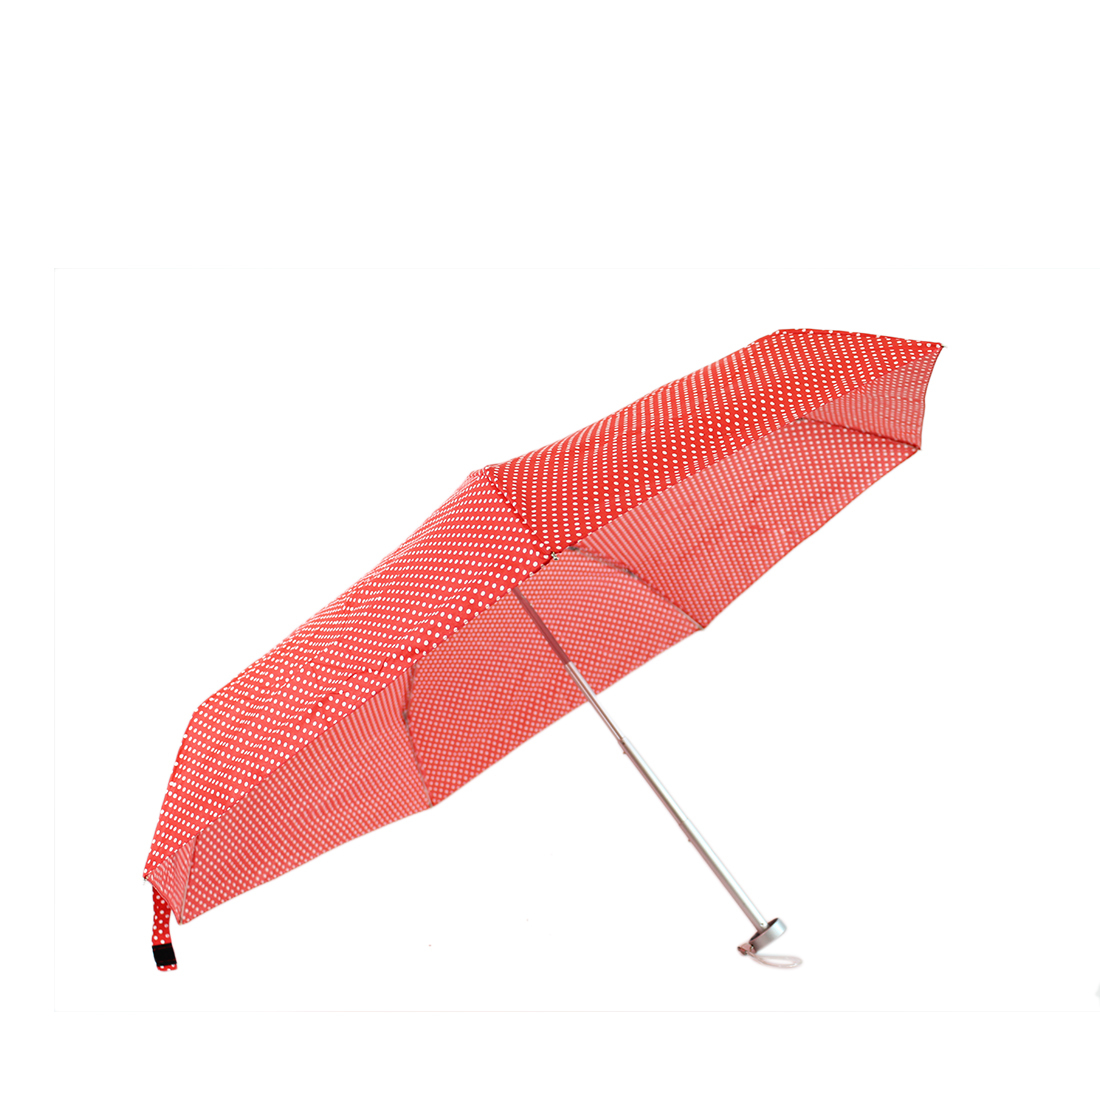 * Super small umbrella with polka dots